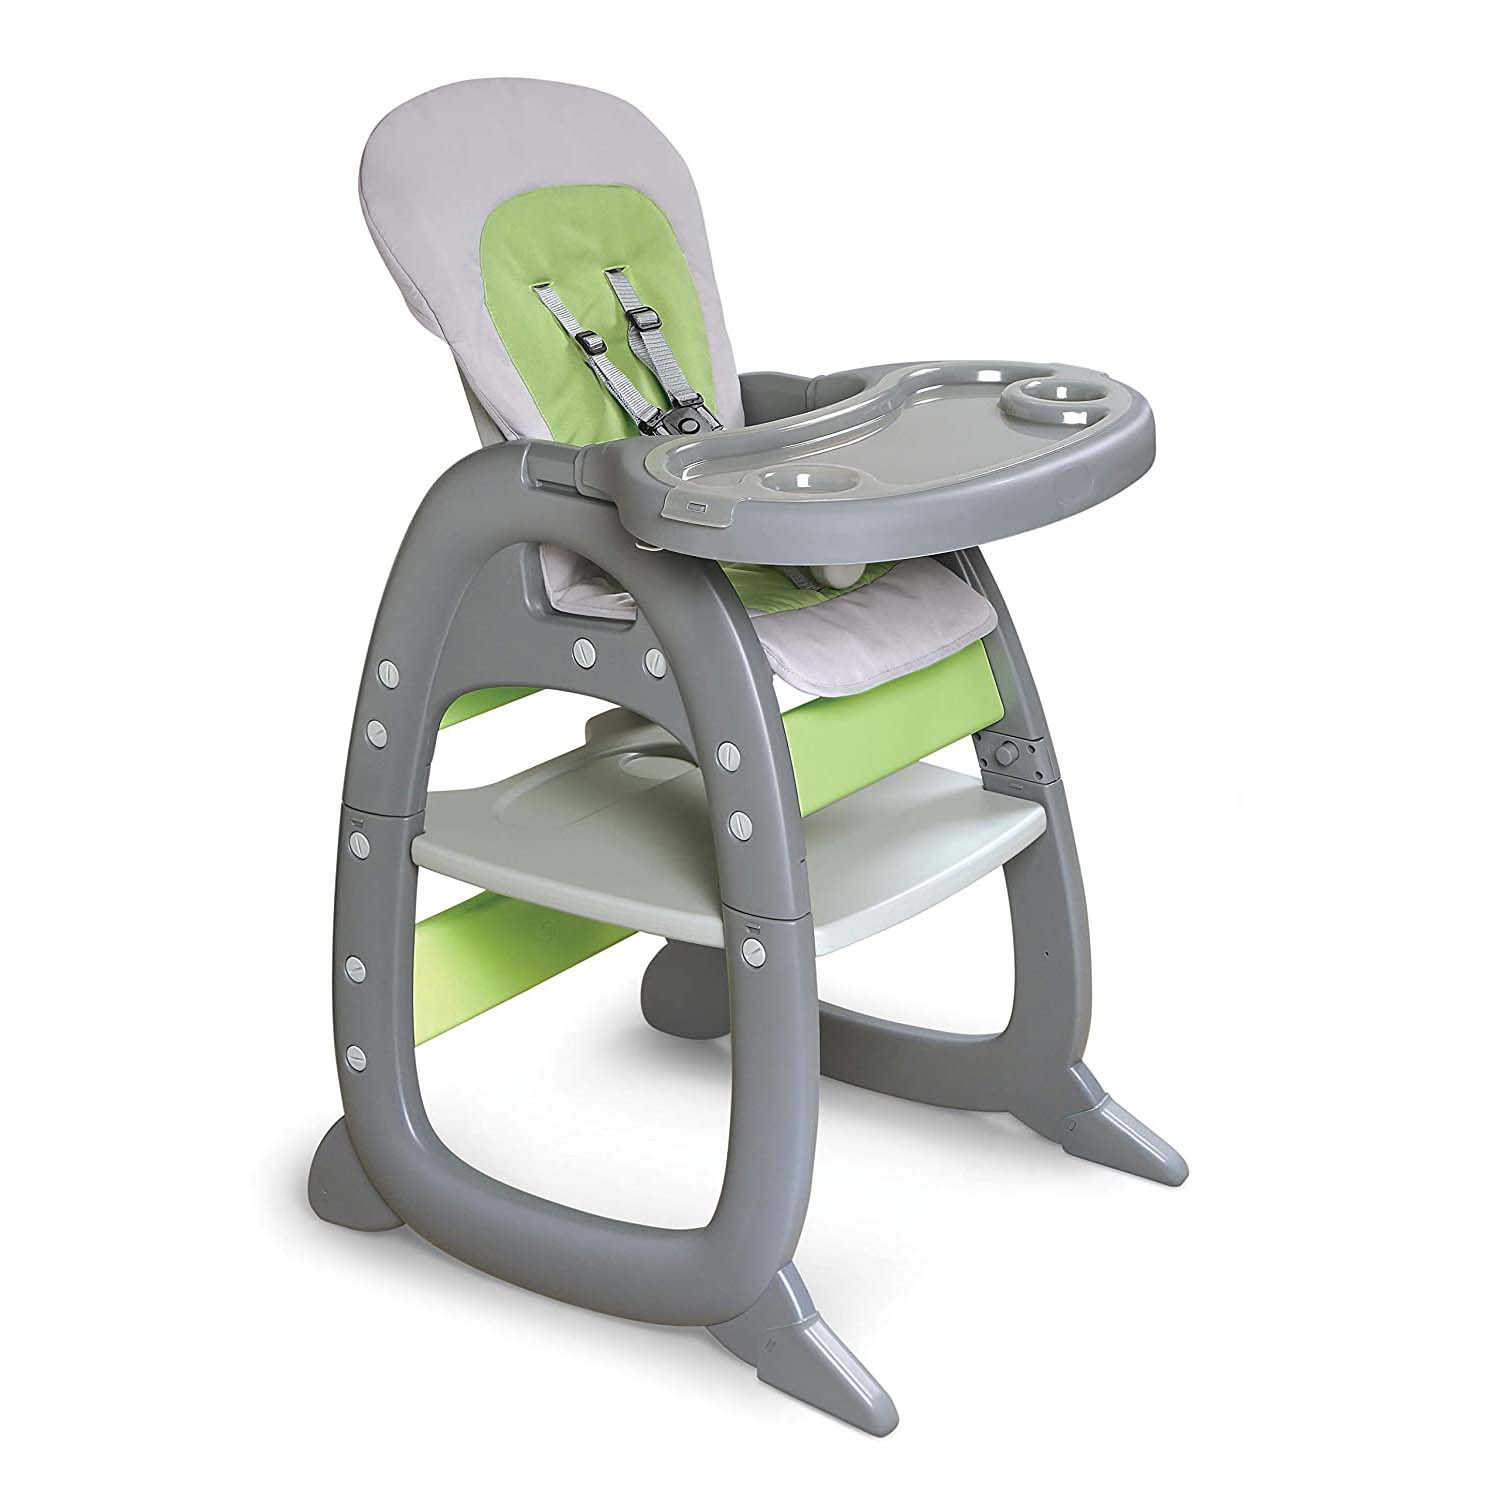 Детский стульчик-трансформер Badger Basket Envee II, серый/зеленый детский стульчик трансформер badger basket envee ii серый бирюзовый